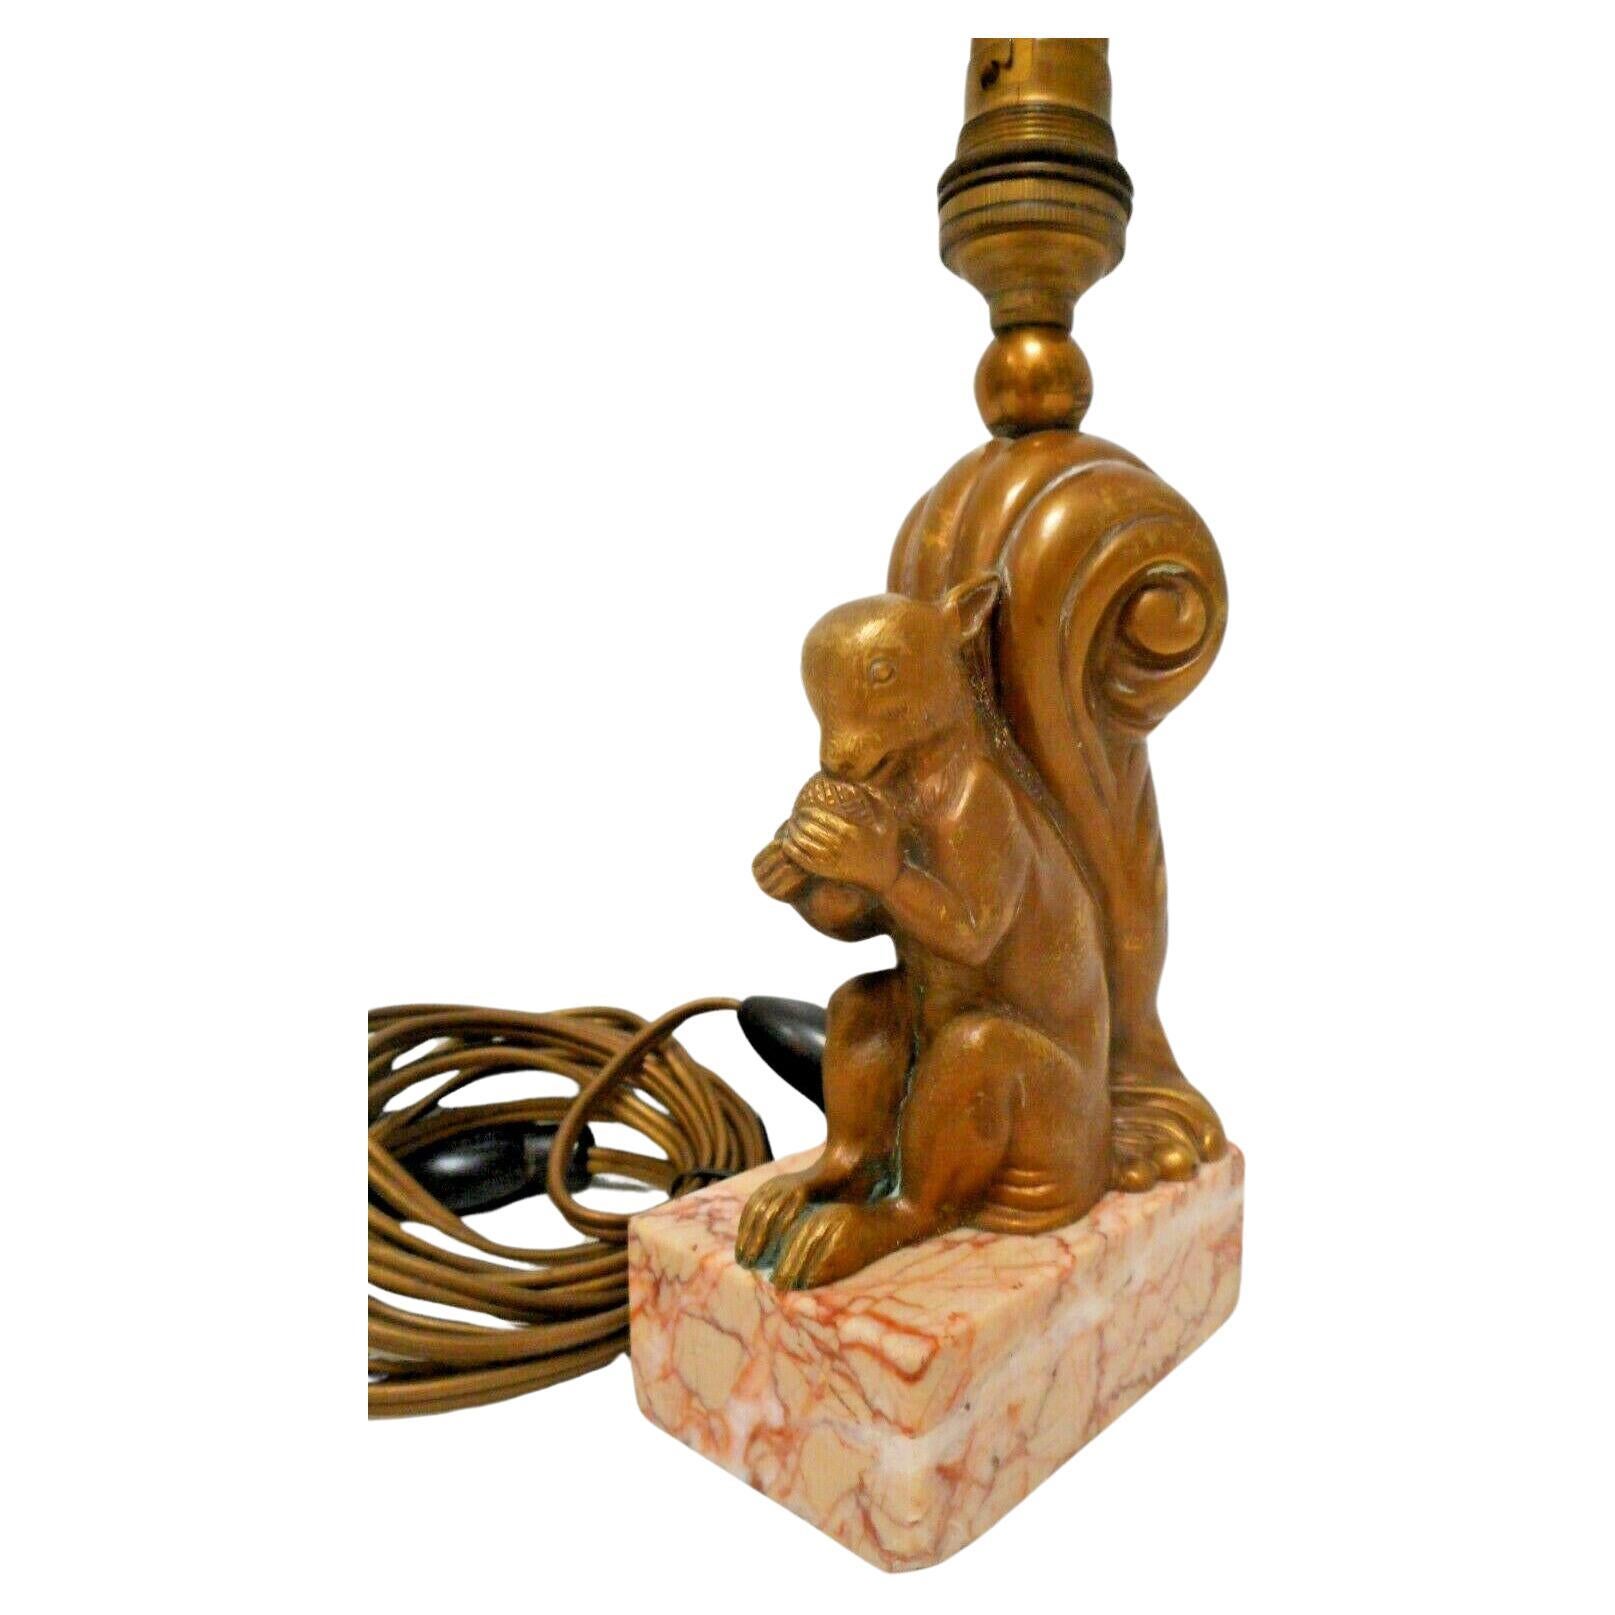 Lampe de table en bronze doré Art déco français des années 1920 représentant le plus mignon des écureuils mangeant sa noisette ; détails incroyables et sculpture sur base en marbre. Lampe de table de très haute qualité. Lampe lourde avec des détails